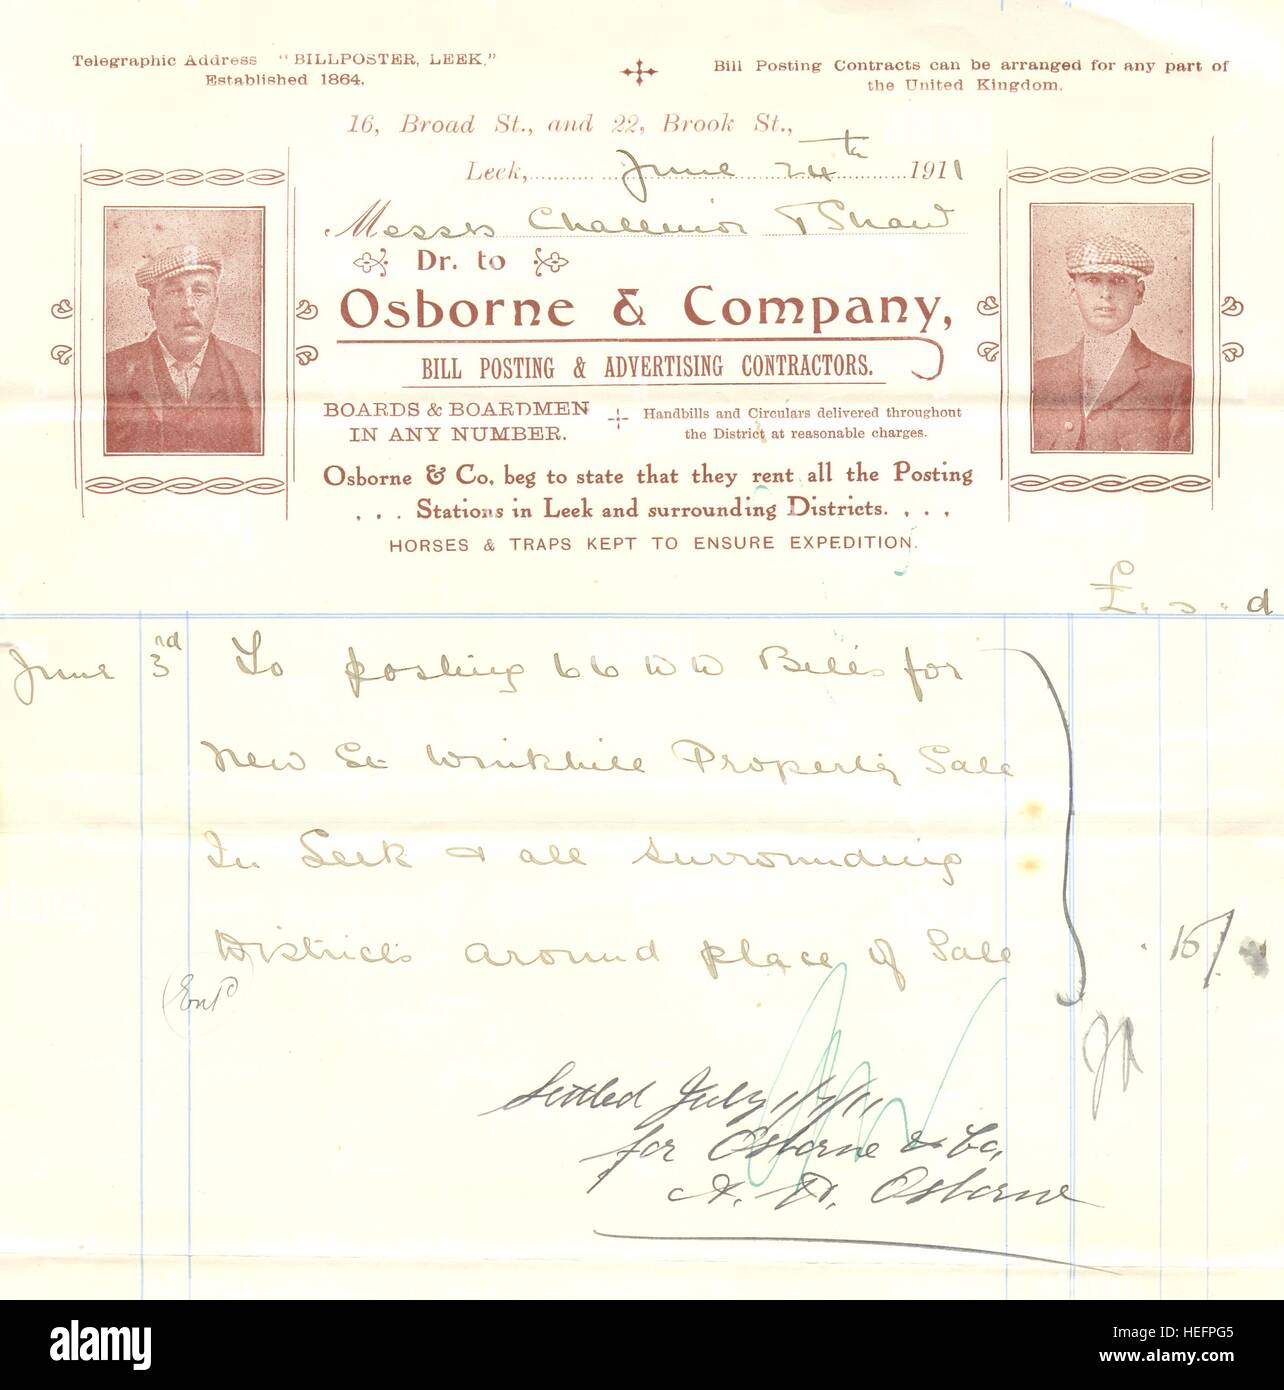 Invoice for Osborne & Company, Bill Posters.  1911 Stock Photo